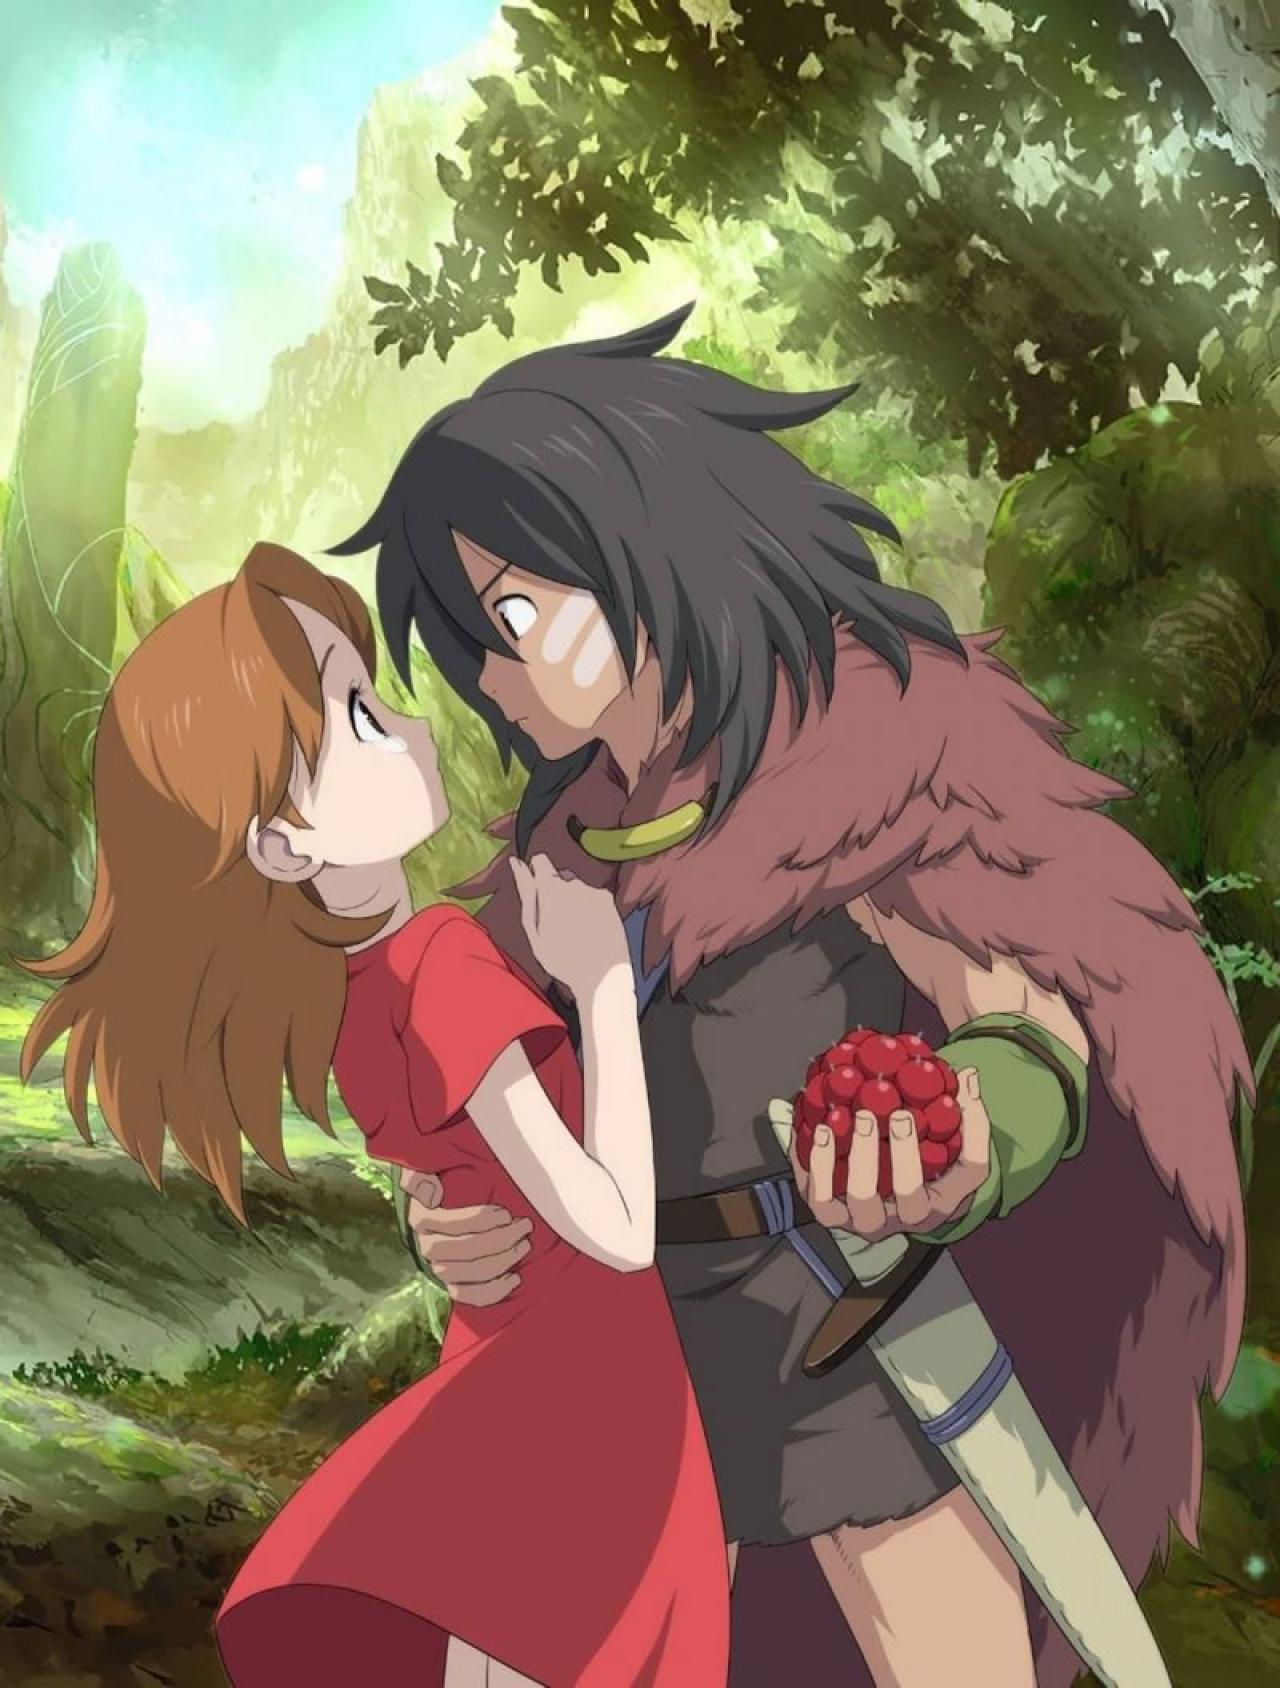 宫崎骏动画《借东西的小人阿莉埃蒂》中的斯皮勒右手搂着阿莉埃蒂，左手拿着树莓